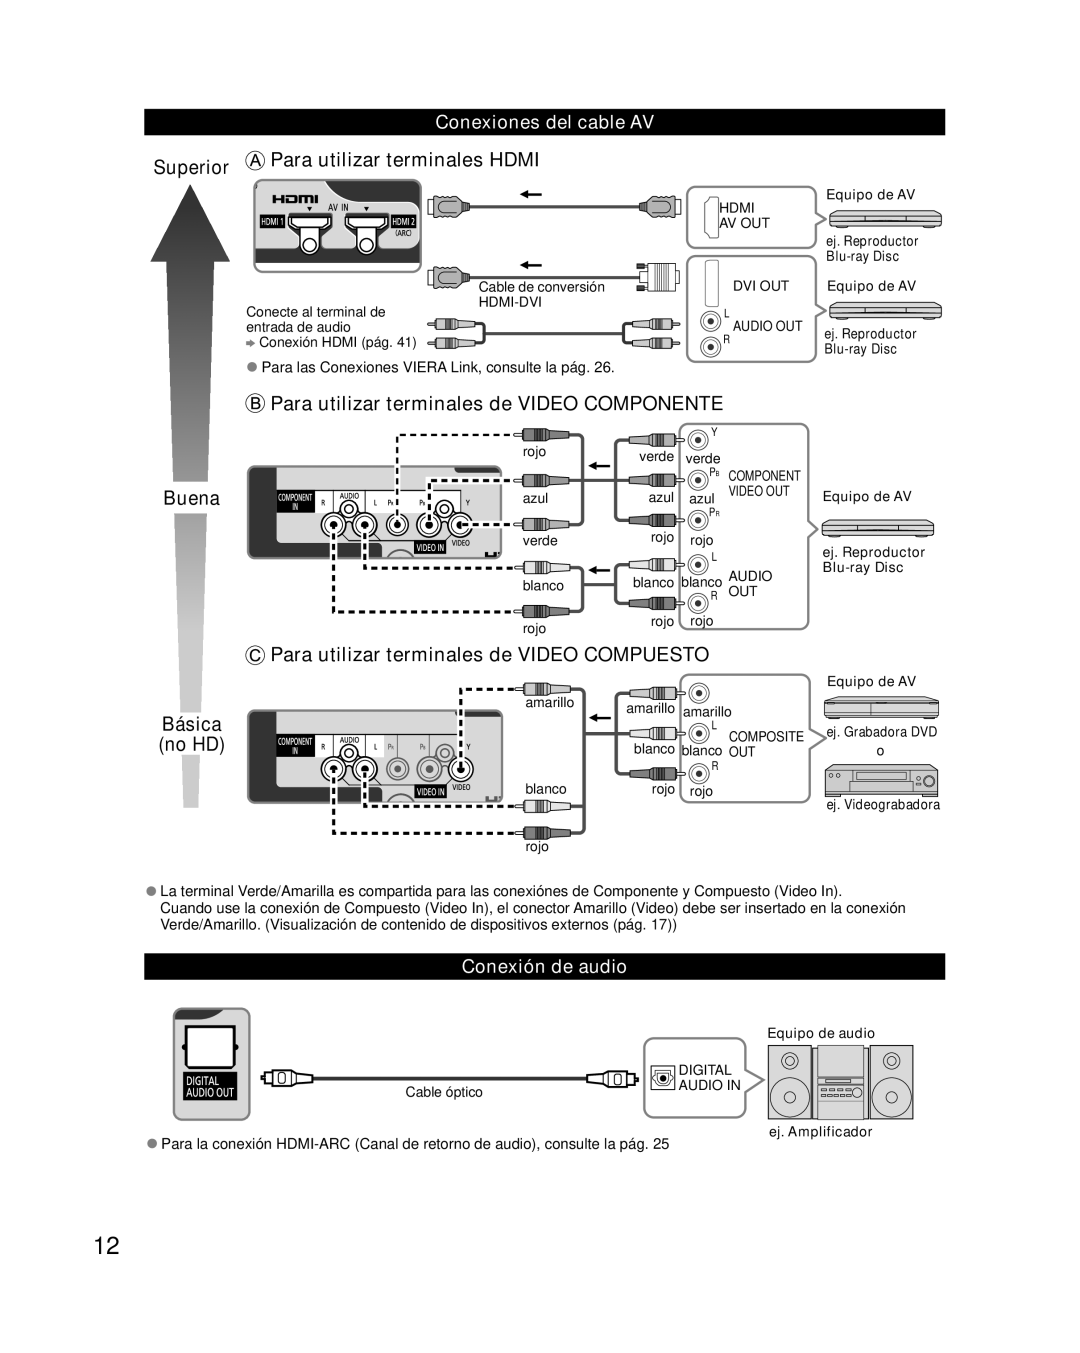 Panasonic TC-P50XT50 Conexiones del cable AV, Conexión de audio, Para las Conexiones Viera Link, consulte la pág 